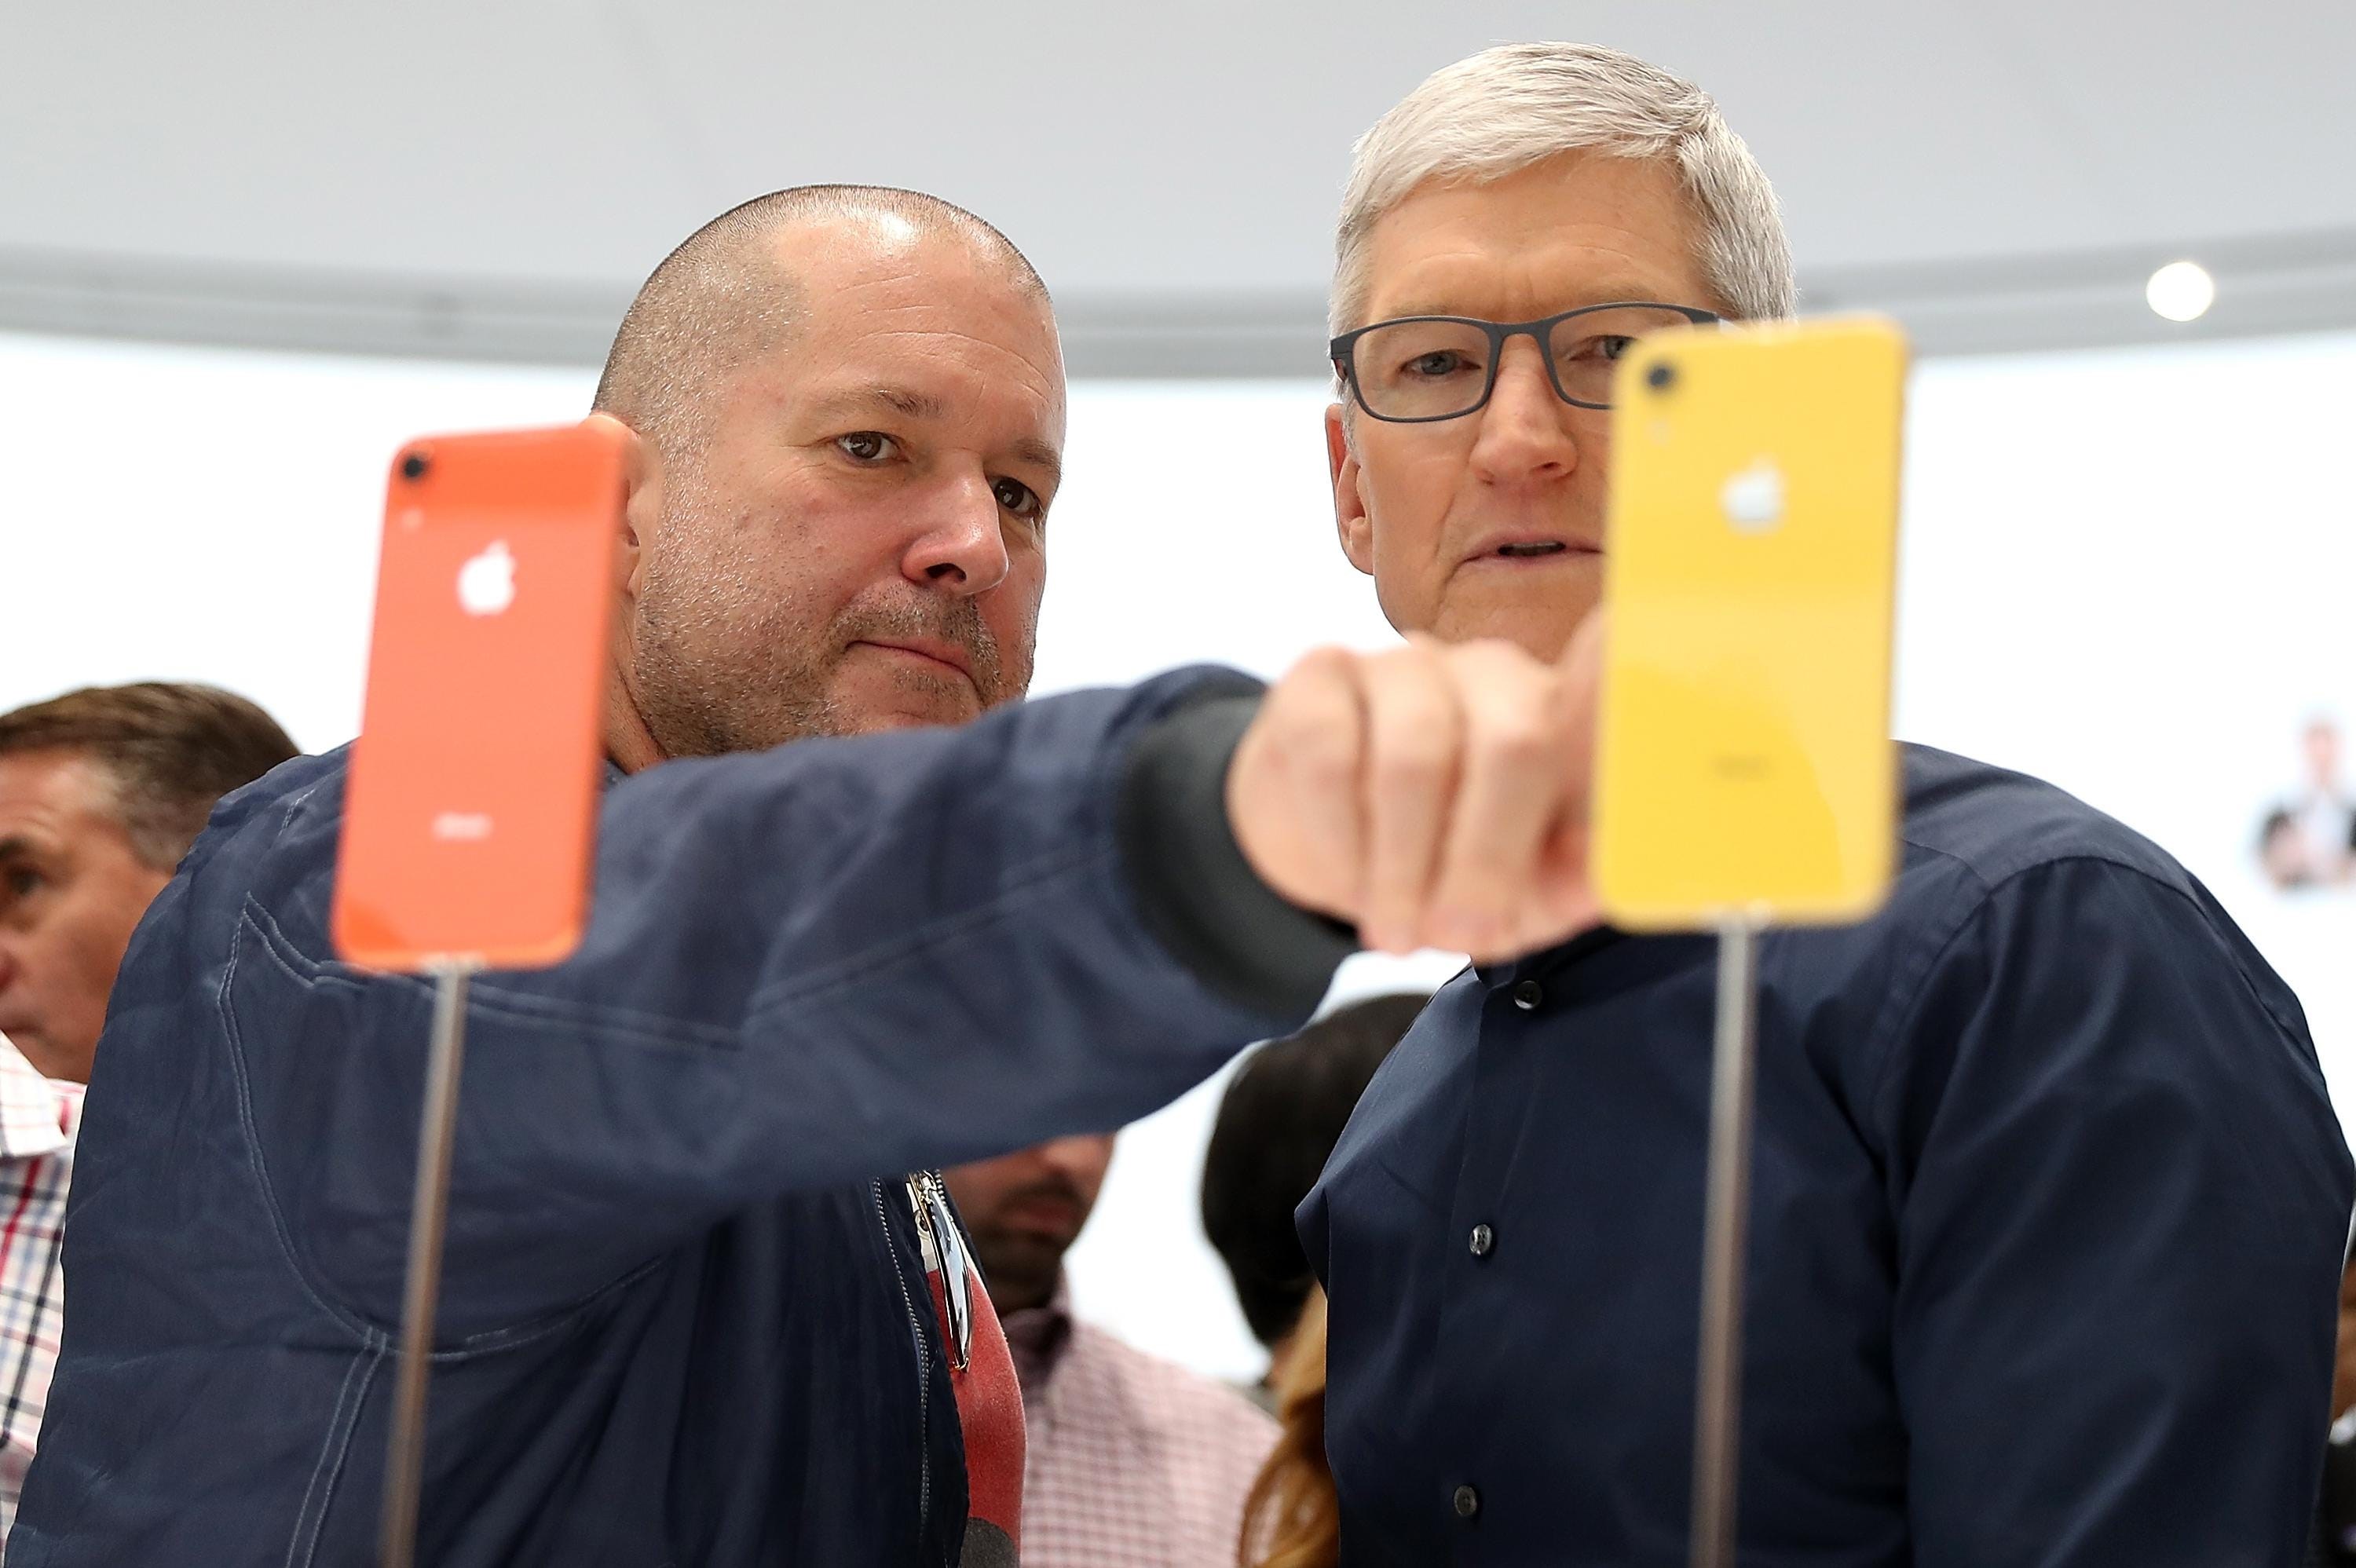 Bir devrin sonu: Apple'ın artık bir baş tasarımcısı olmayacak